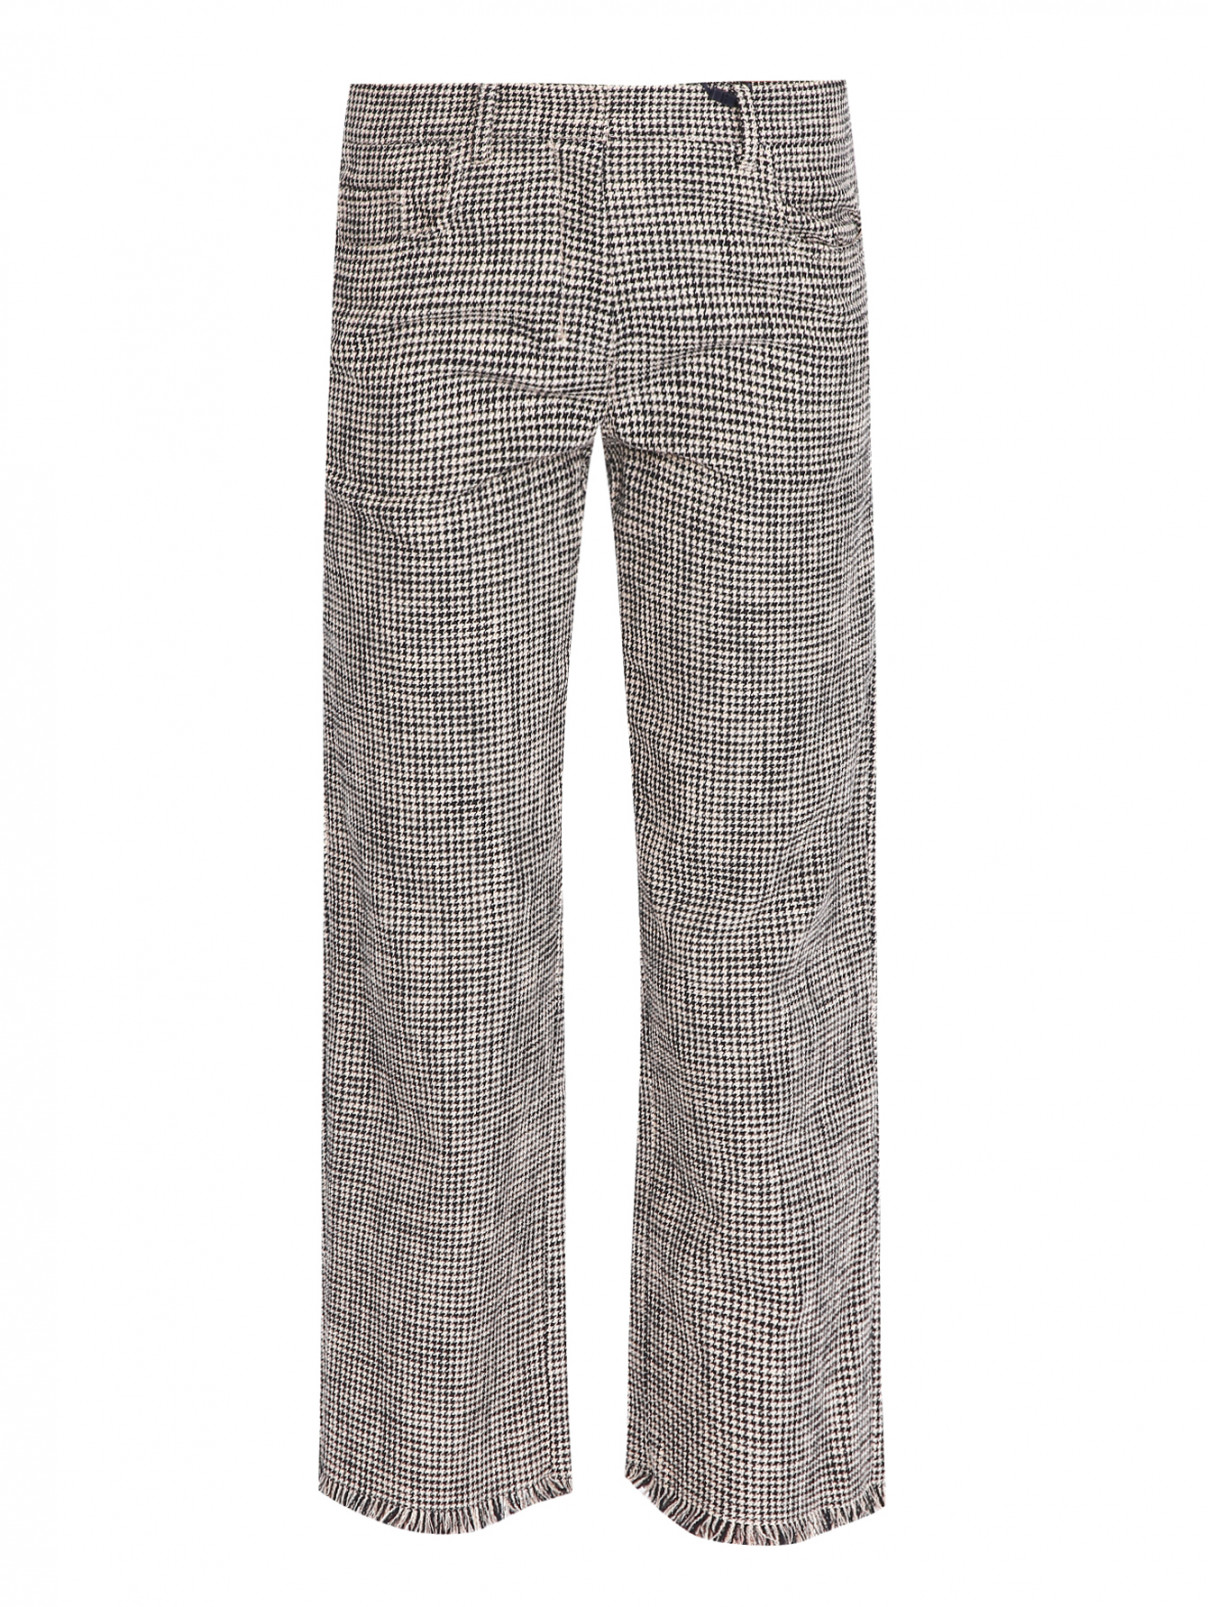 Укороченные брюки из хлопка с узором Max Mara  –  Общий вид  – Цвет:  Узор